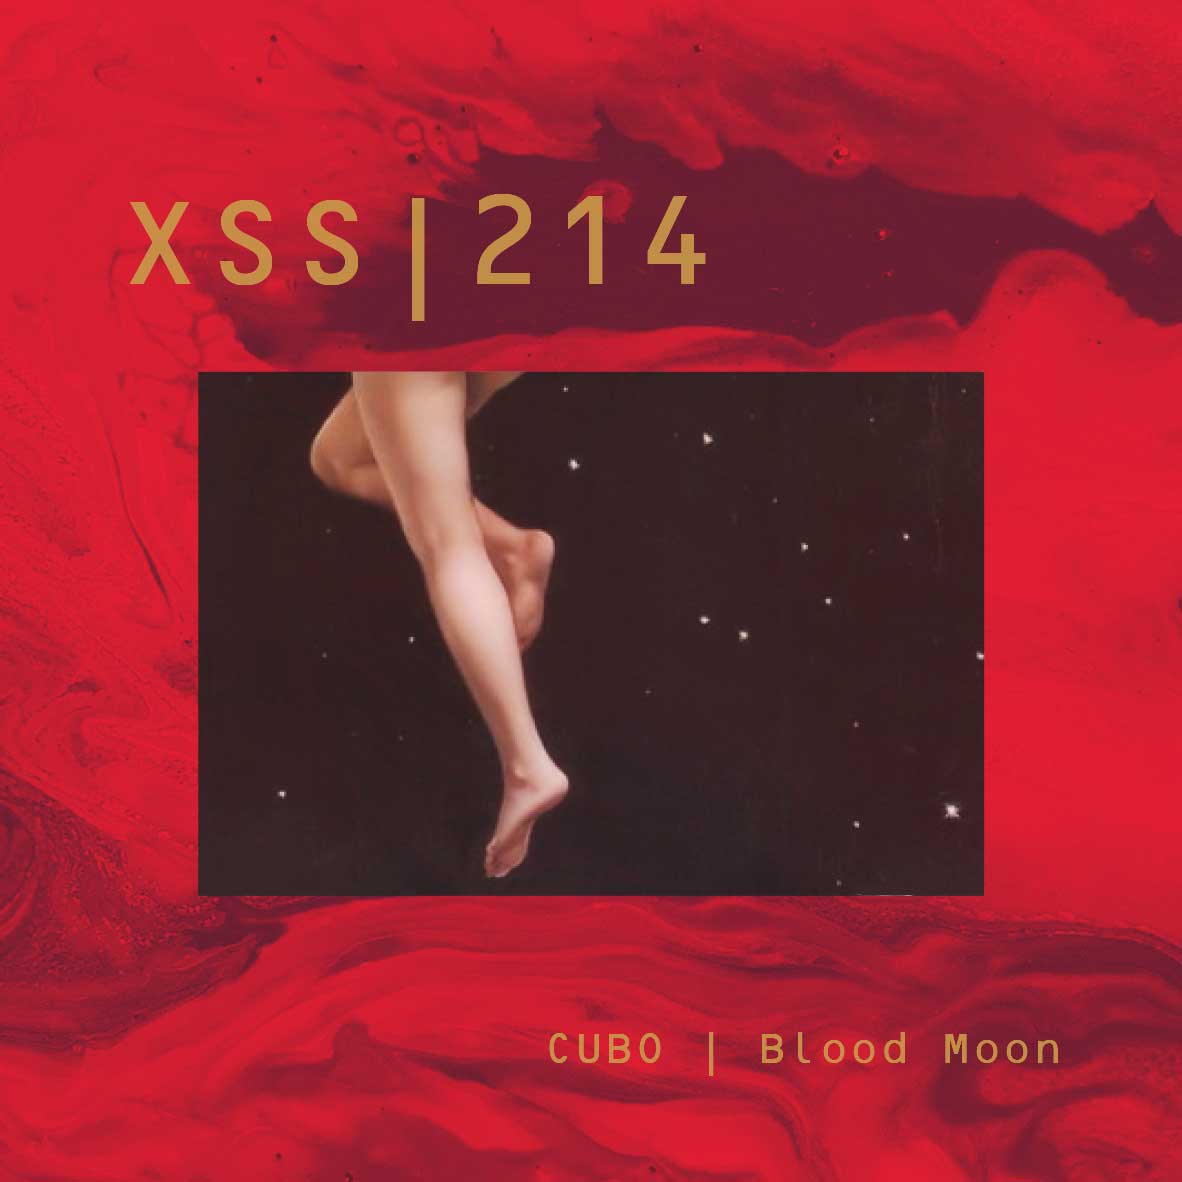 XSS214 | Cubo | Blood Moon